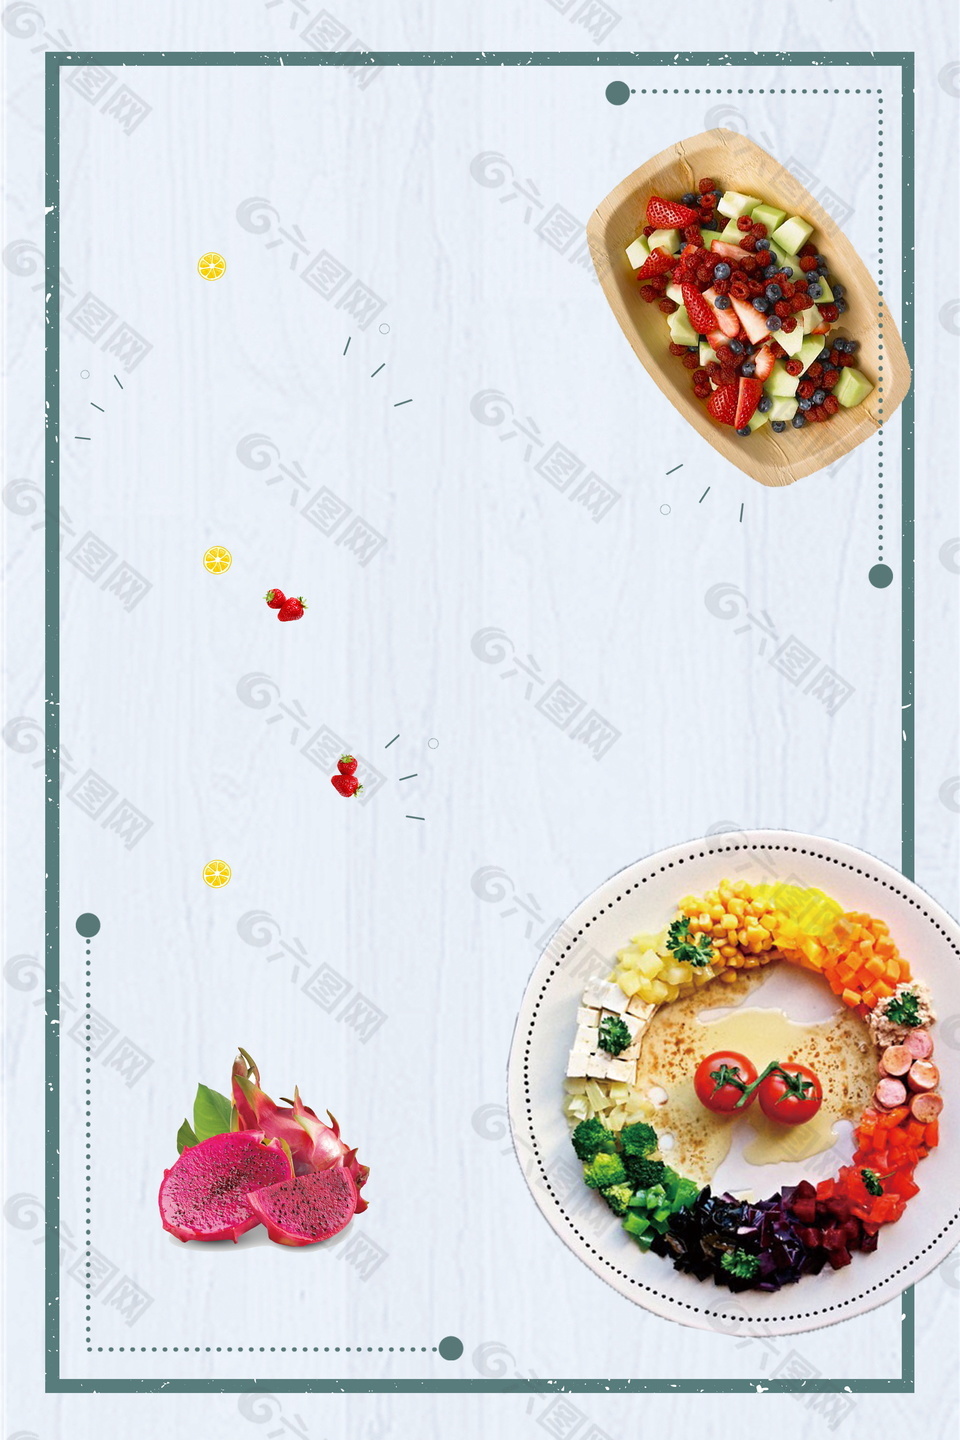 唯美圆圈蔬菜水果沙拉边框背景素材